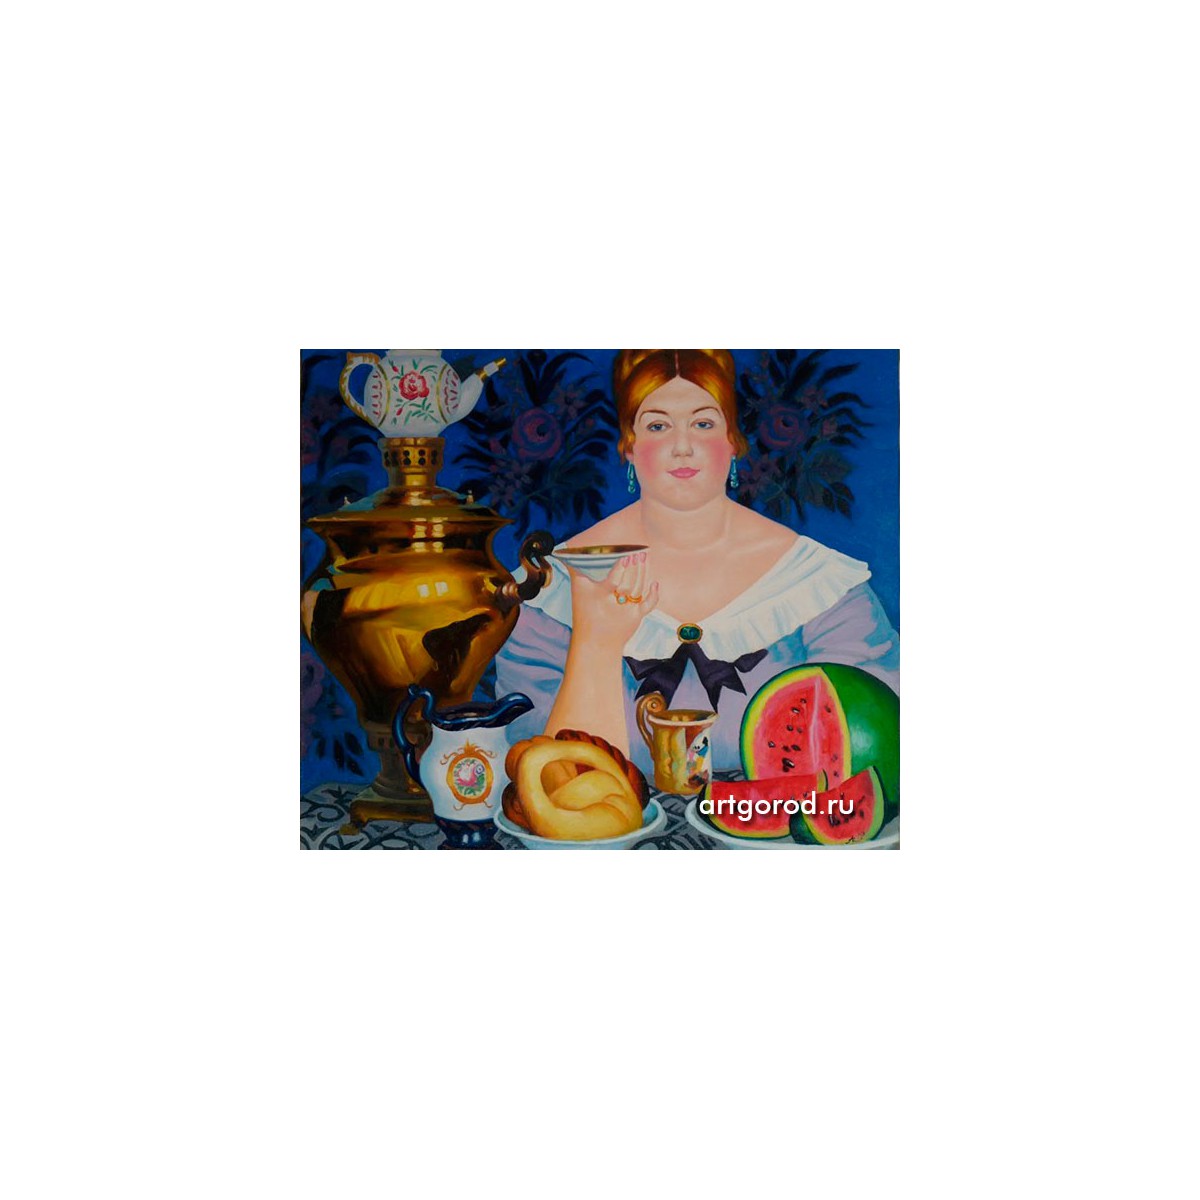 копия картины Б. Кустодиева "Купчиха, пьющая чай"